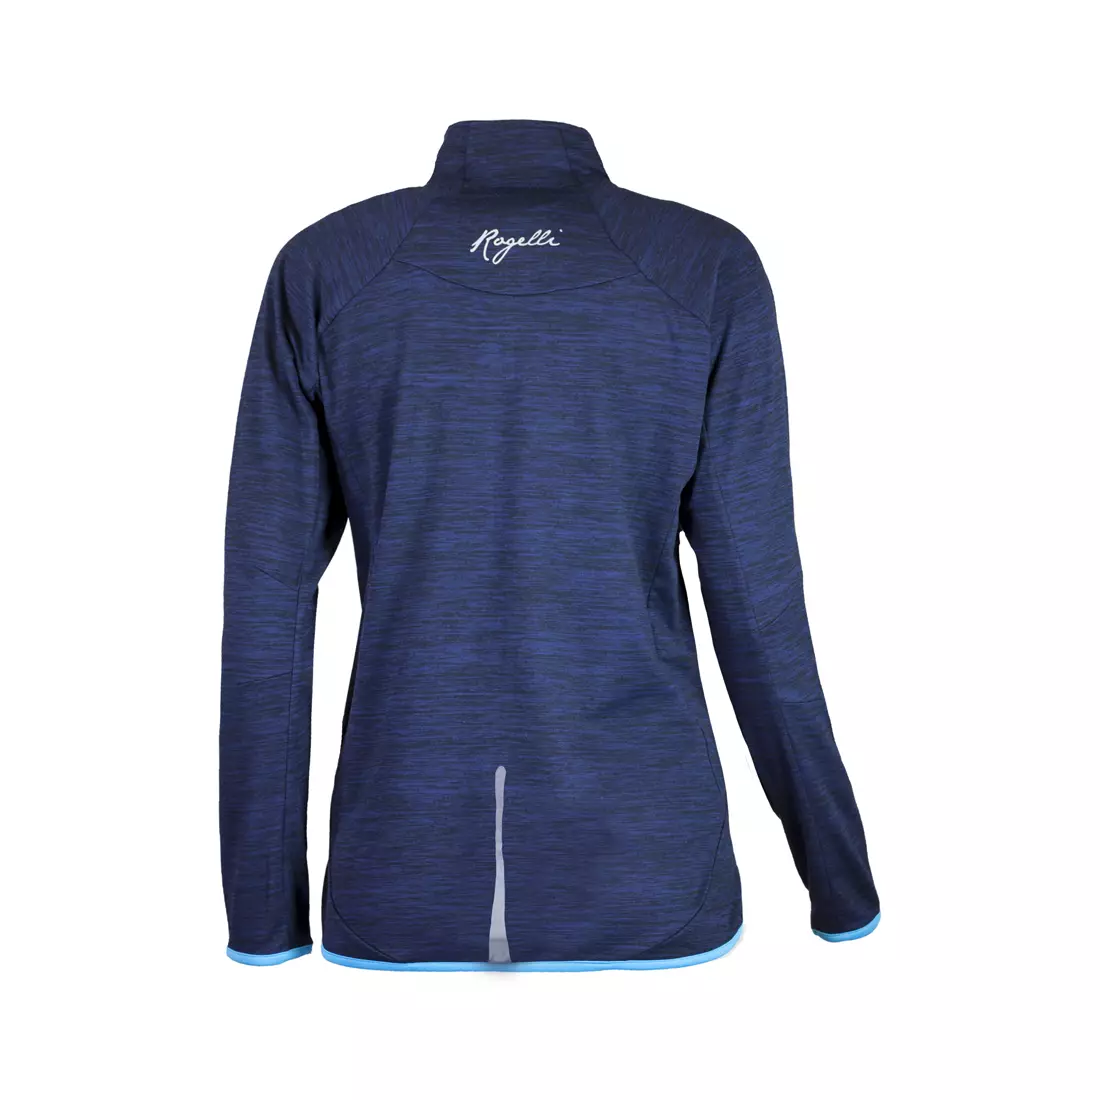 ROGELLI RUN BRIGHT 840.664 - dámske bežecké tričko s dlhým rukávom, modrá melanž